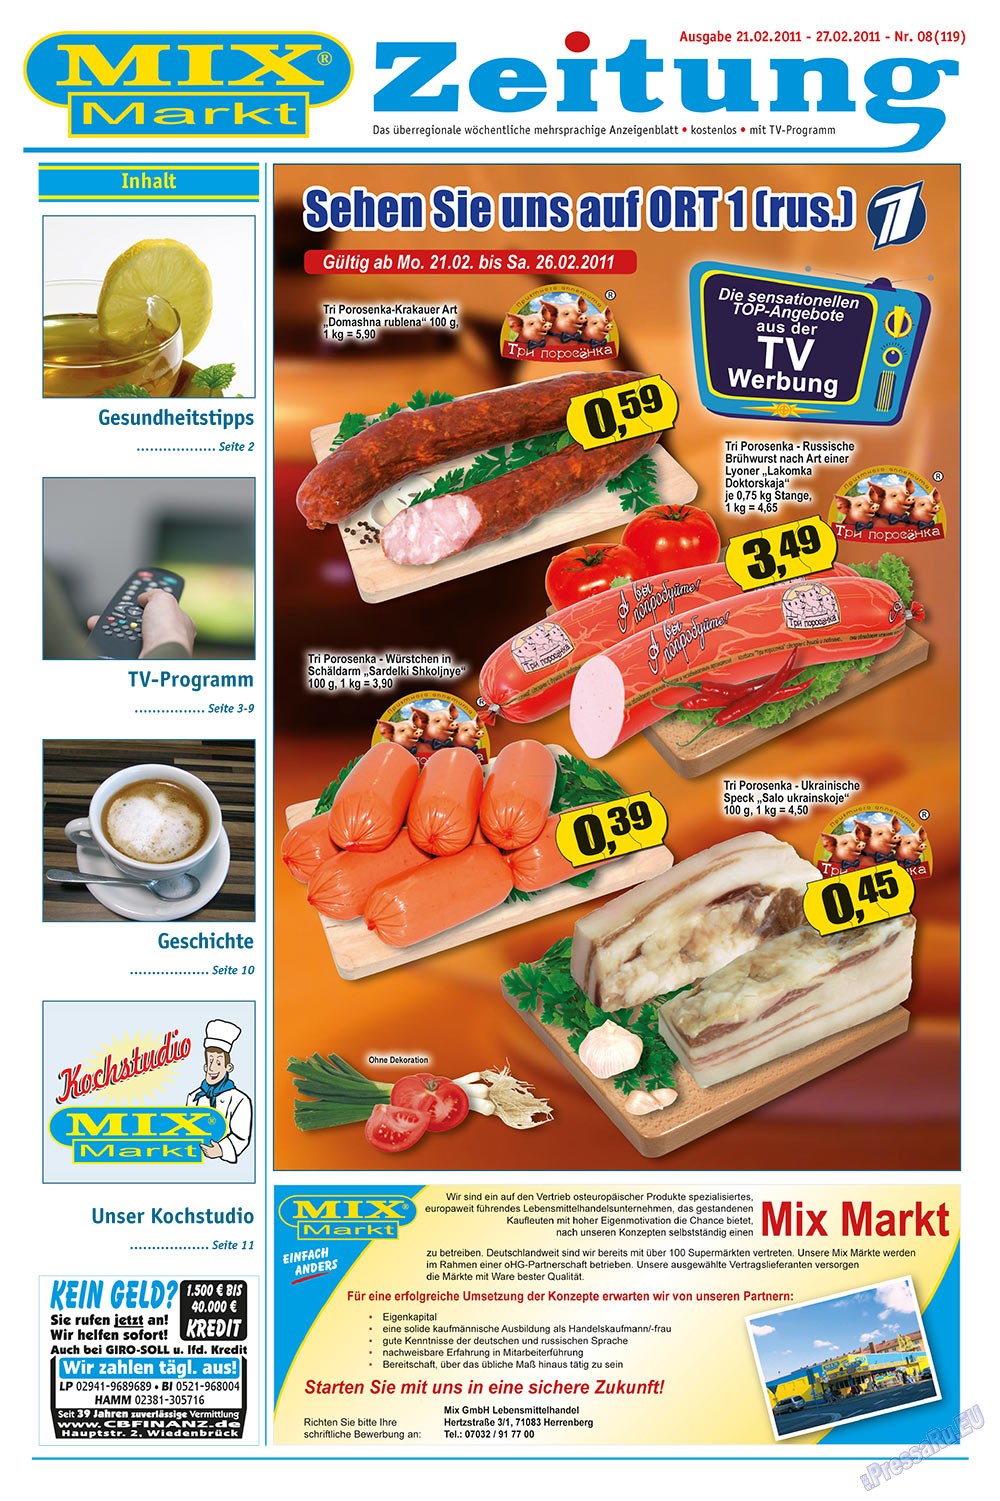 MIX-Markt Zeitung (газета). 2011 год, номер 8, стр. 1